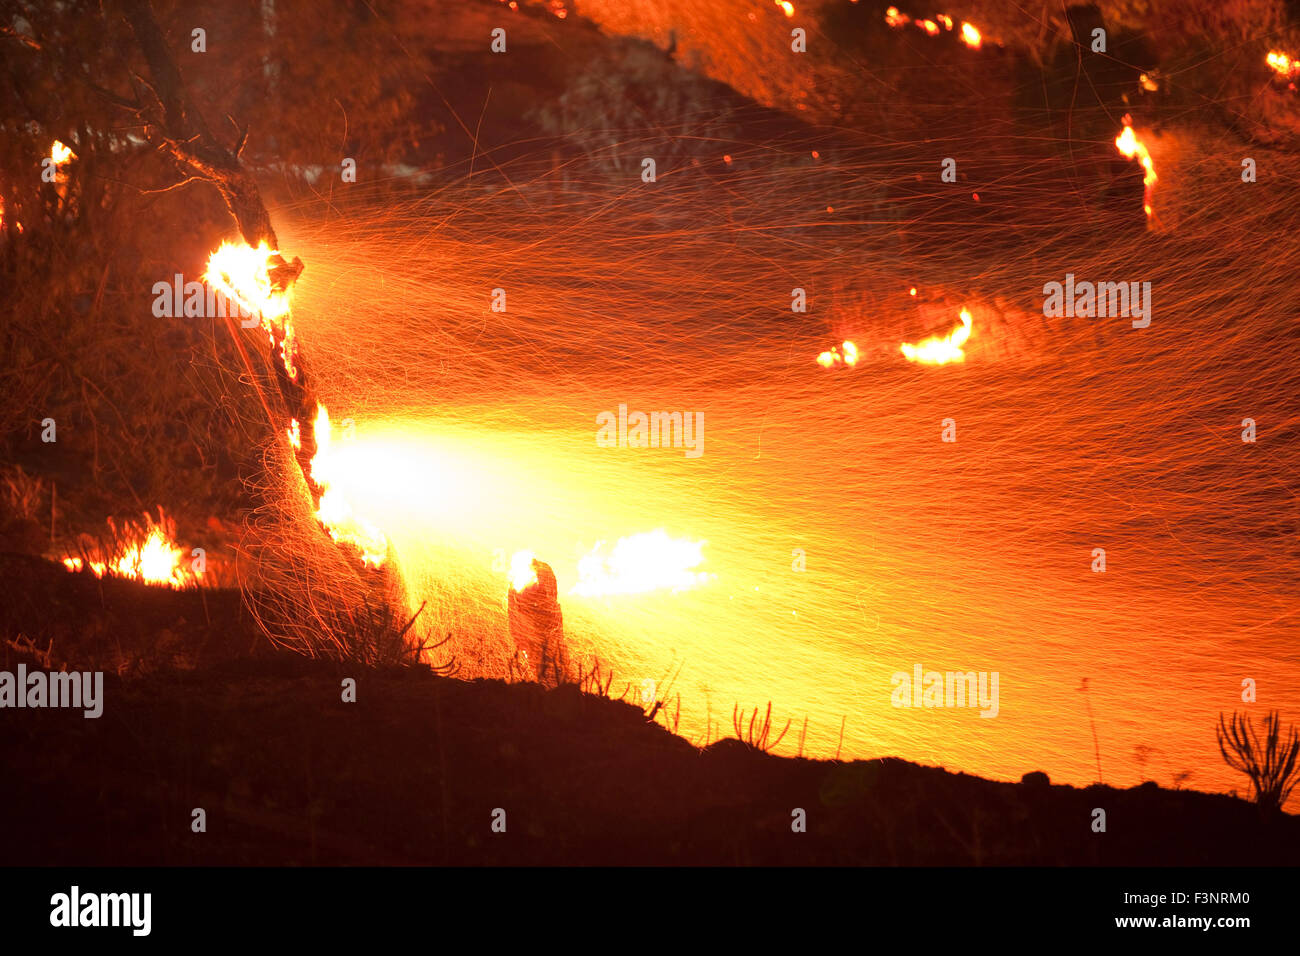 Streifen von Funkenflug Feuer und brennenden Baum Zweige Afterglow in der Nacht. Platy Dorf brennenden Website. Insel Limnos, Griechenland Stockfoto